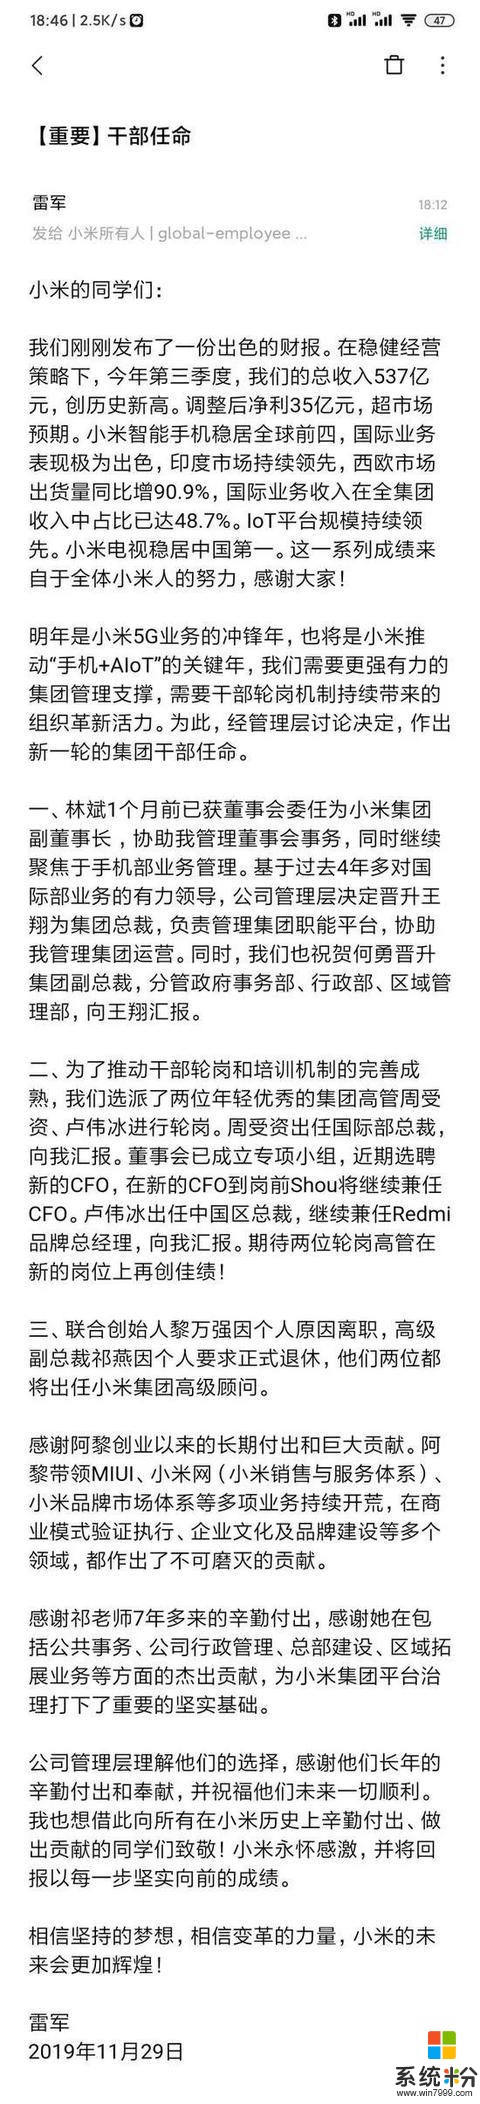 小米发布内部信宣布了最新高管任命(3)